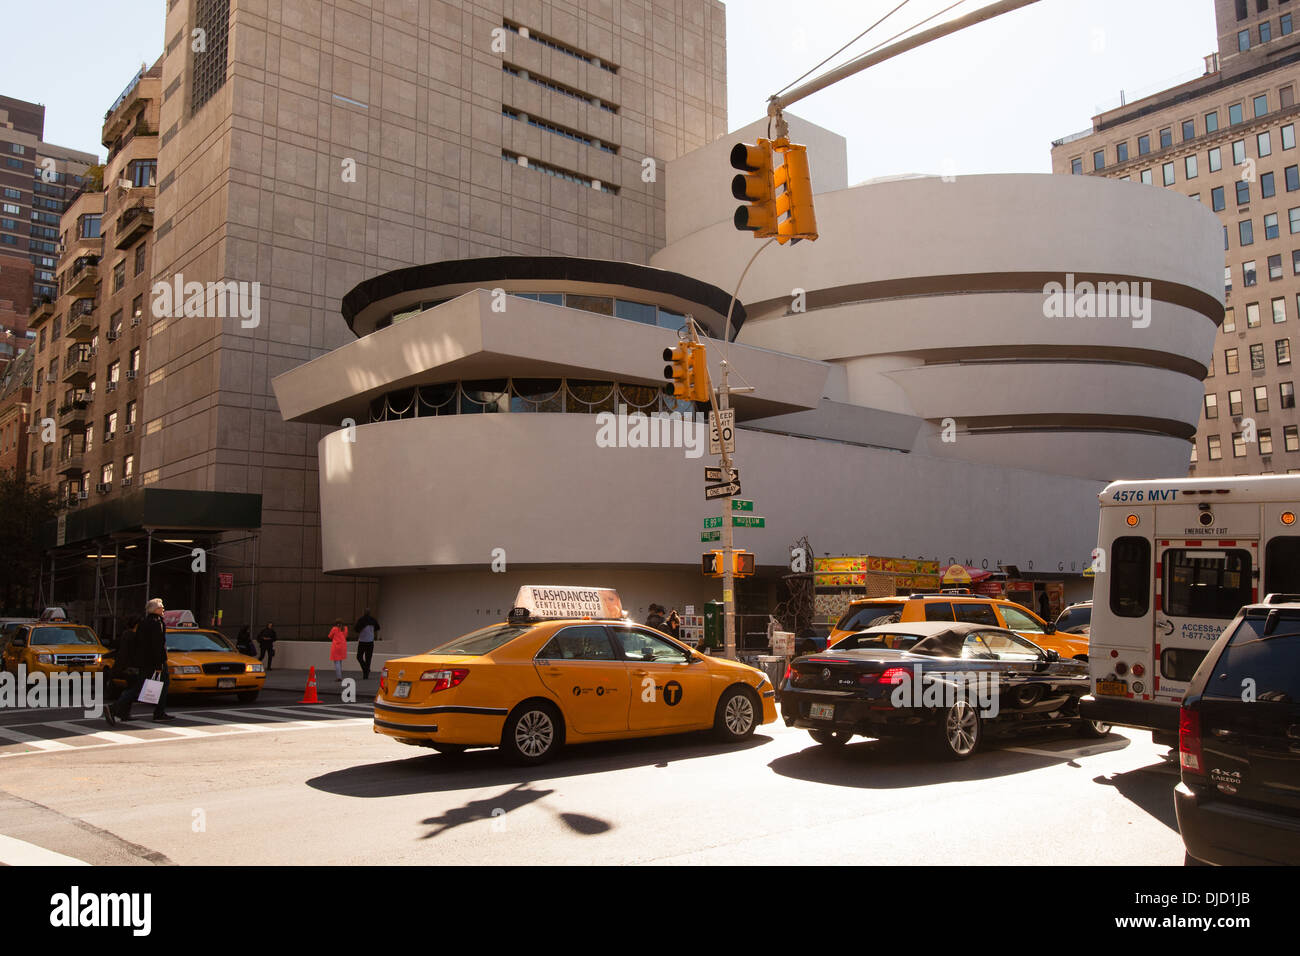 Salomon. R. Guggenheim Museum, New York City, États-Unis d'Amérique. Banque D'Images